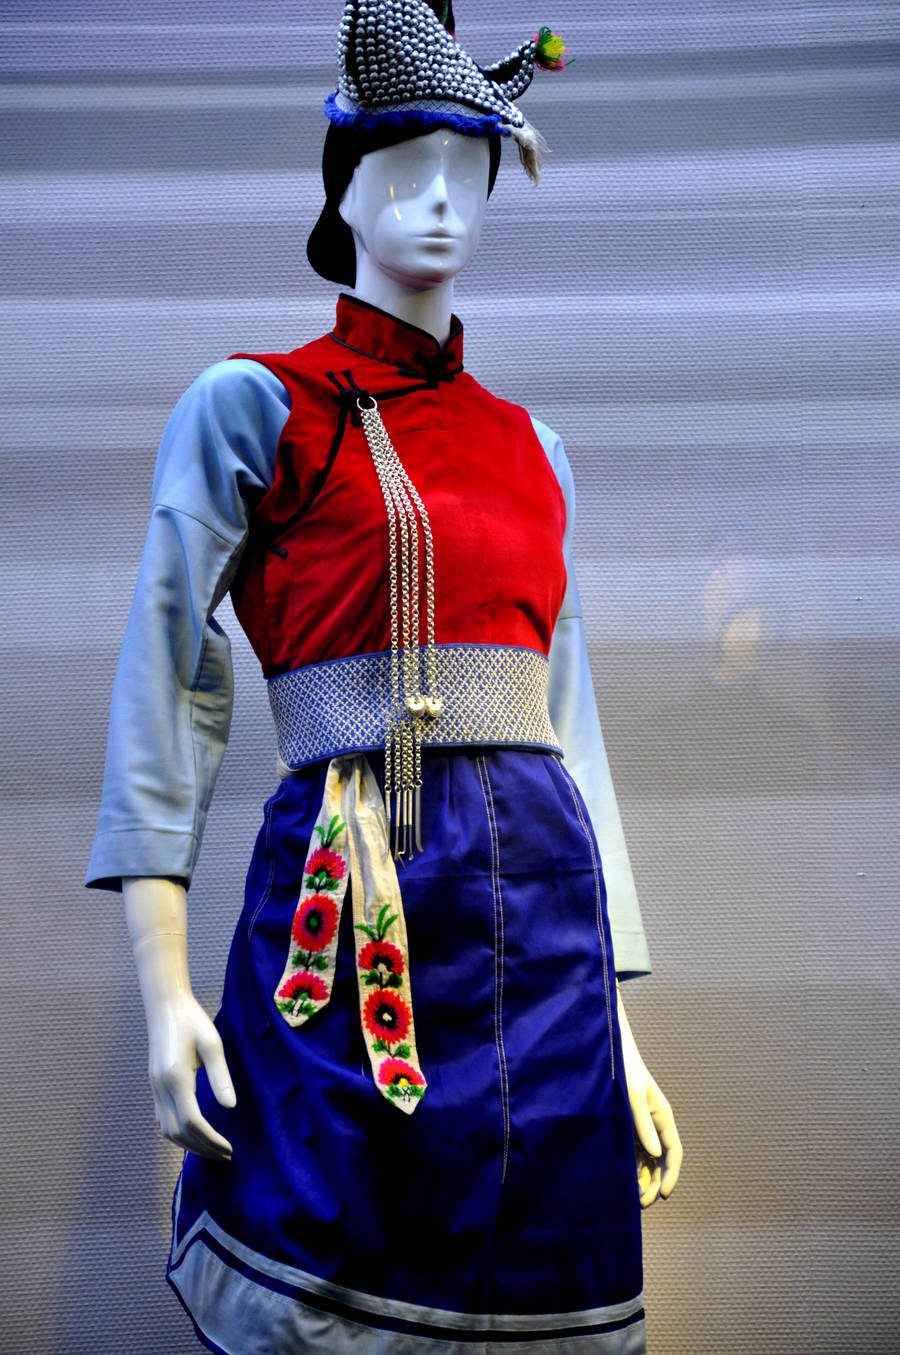 China_Shopping_China_Culture_Bai_Ethnic_Clothing.jpg